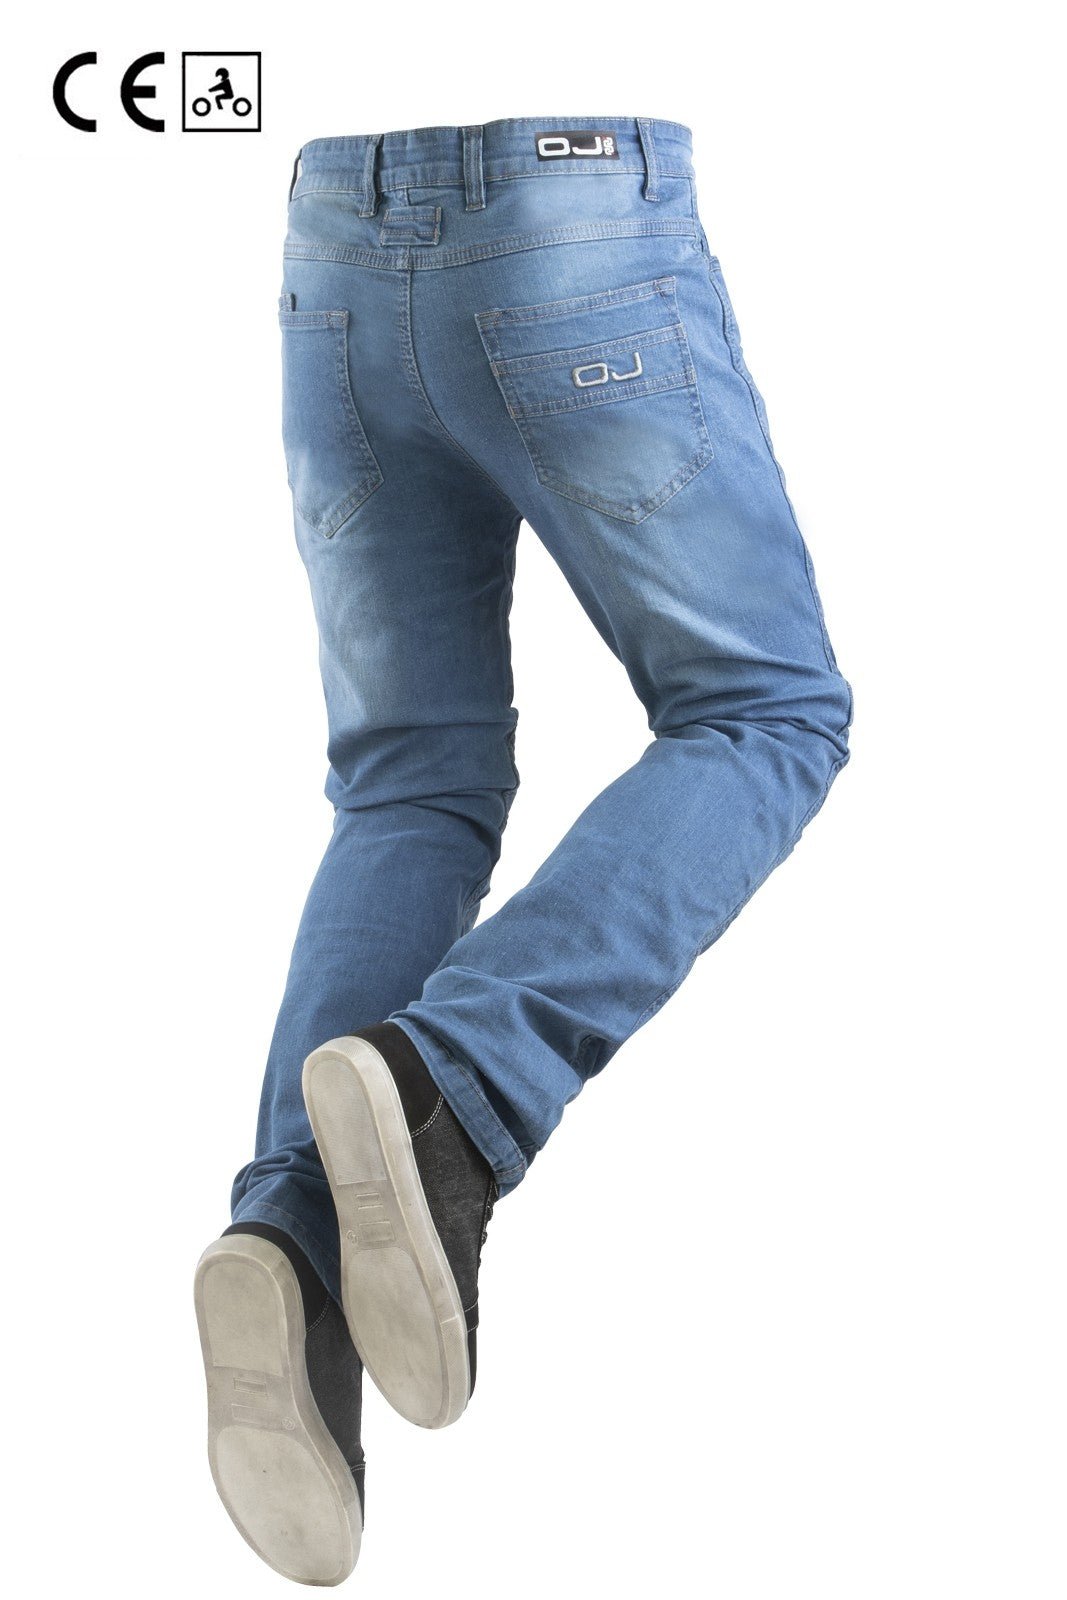 Jeans moto OJ RELOAD MAN 4stagioni elasticizzato con protezioni –